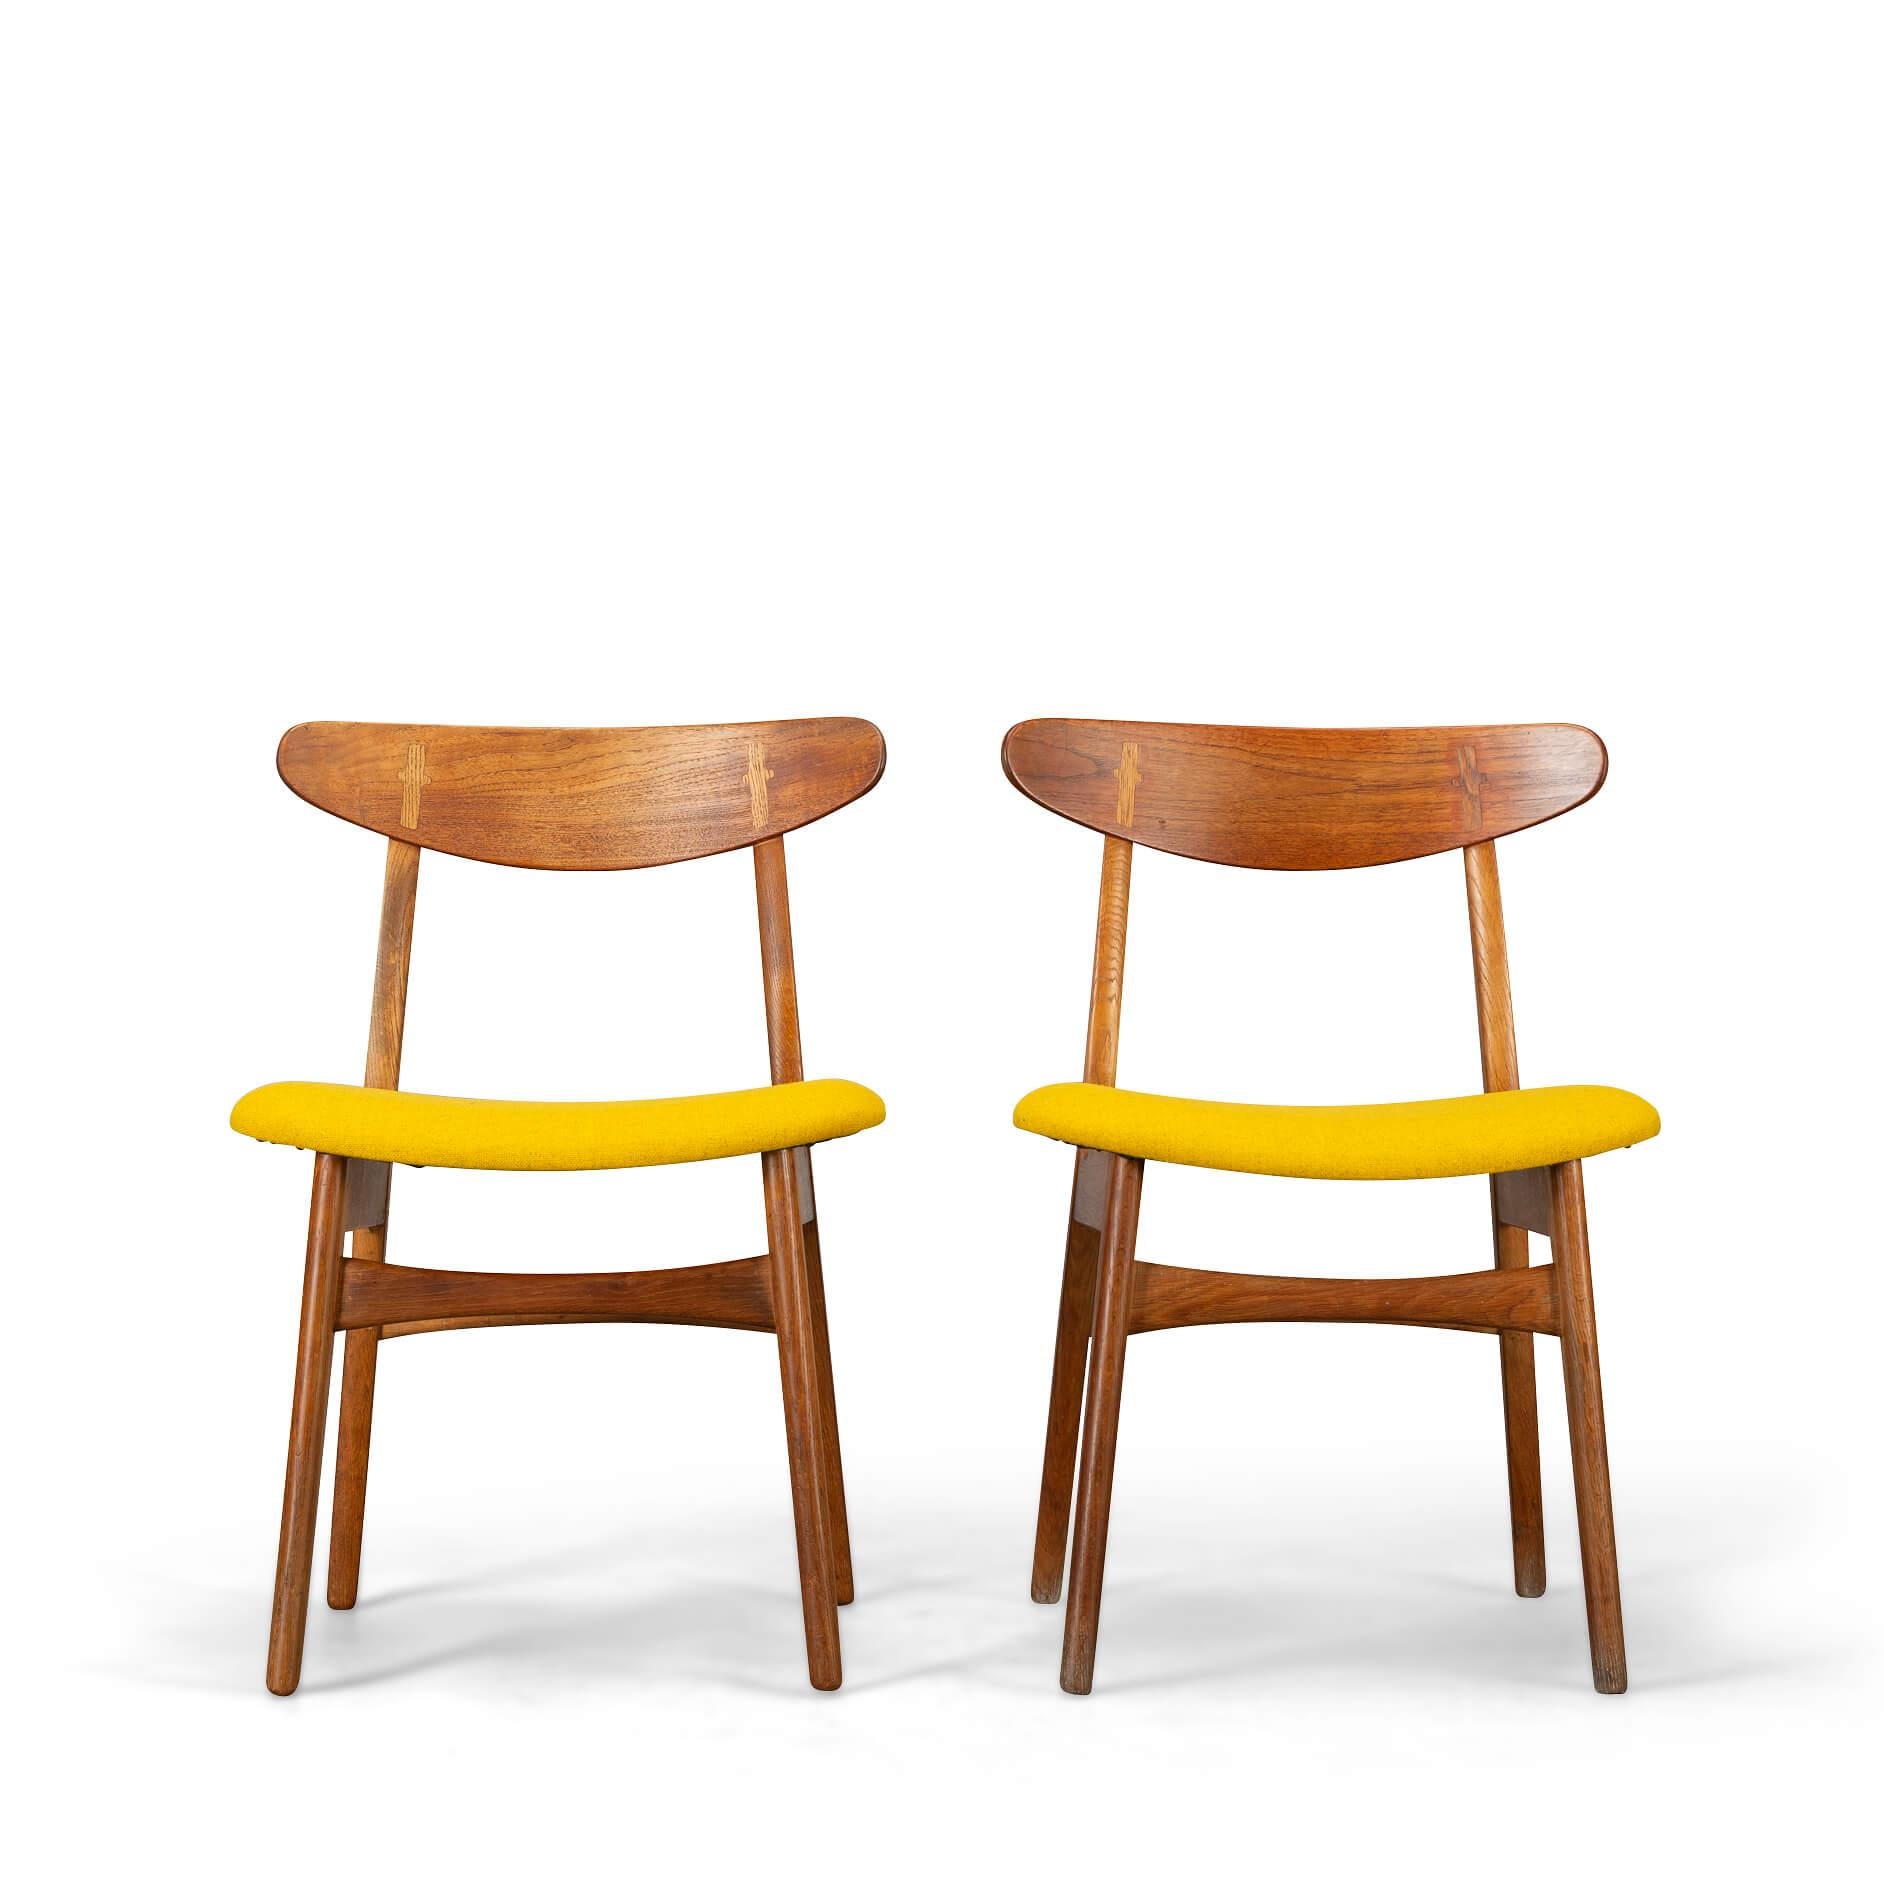 Chaises au design vintage : CH30
Design/One de Hans J. Wegner avec la célèbre technique de fixation cruciforme en bois reliant le dossier. D'autres parties de la conception de la chaise sont remarquablement directes, ne corrigeant rien qui n'ait